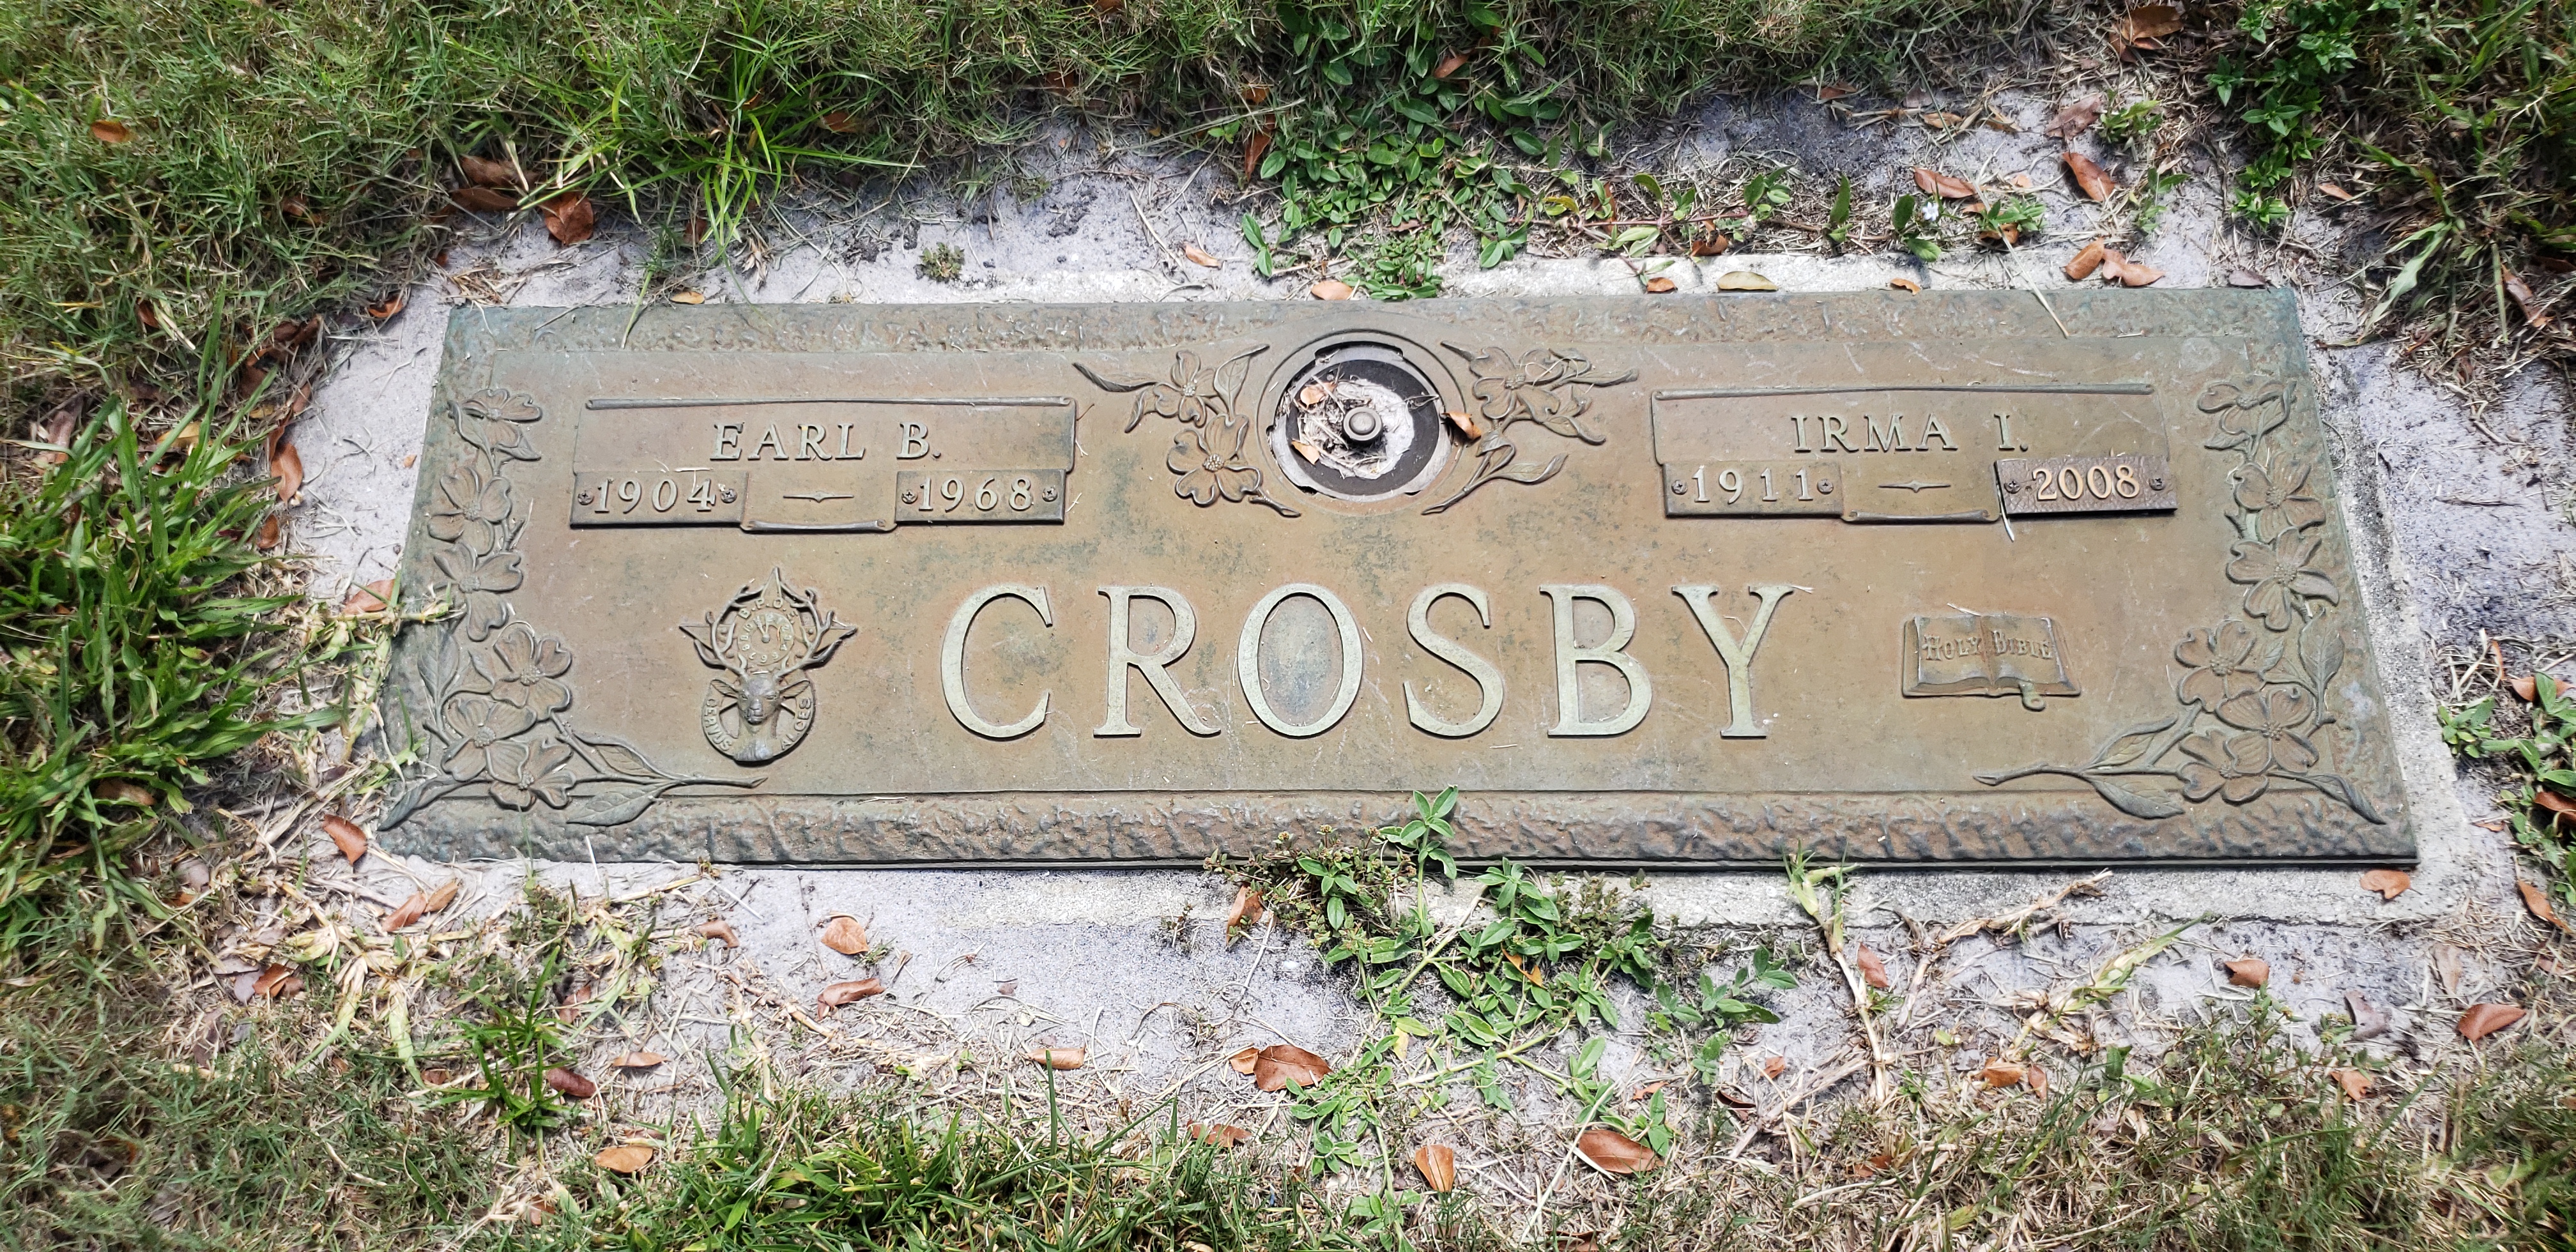 Irma I Crosby